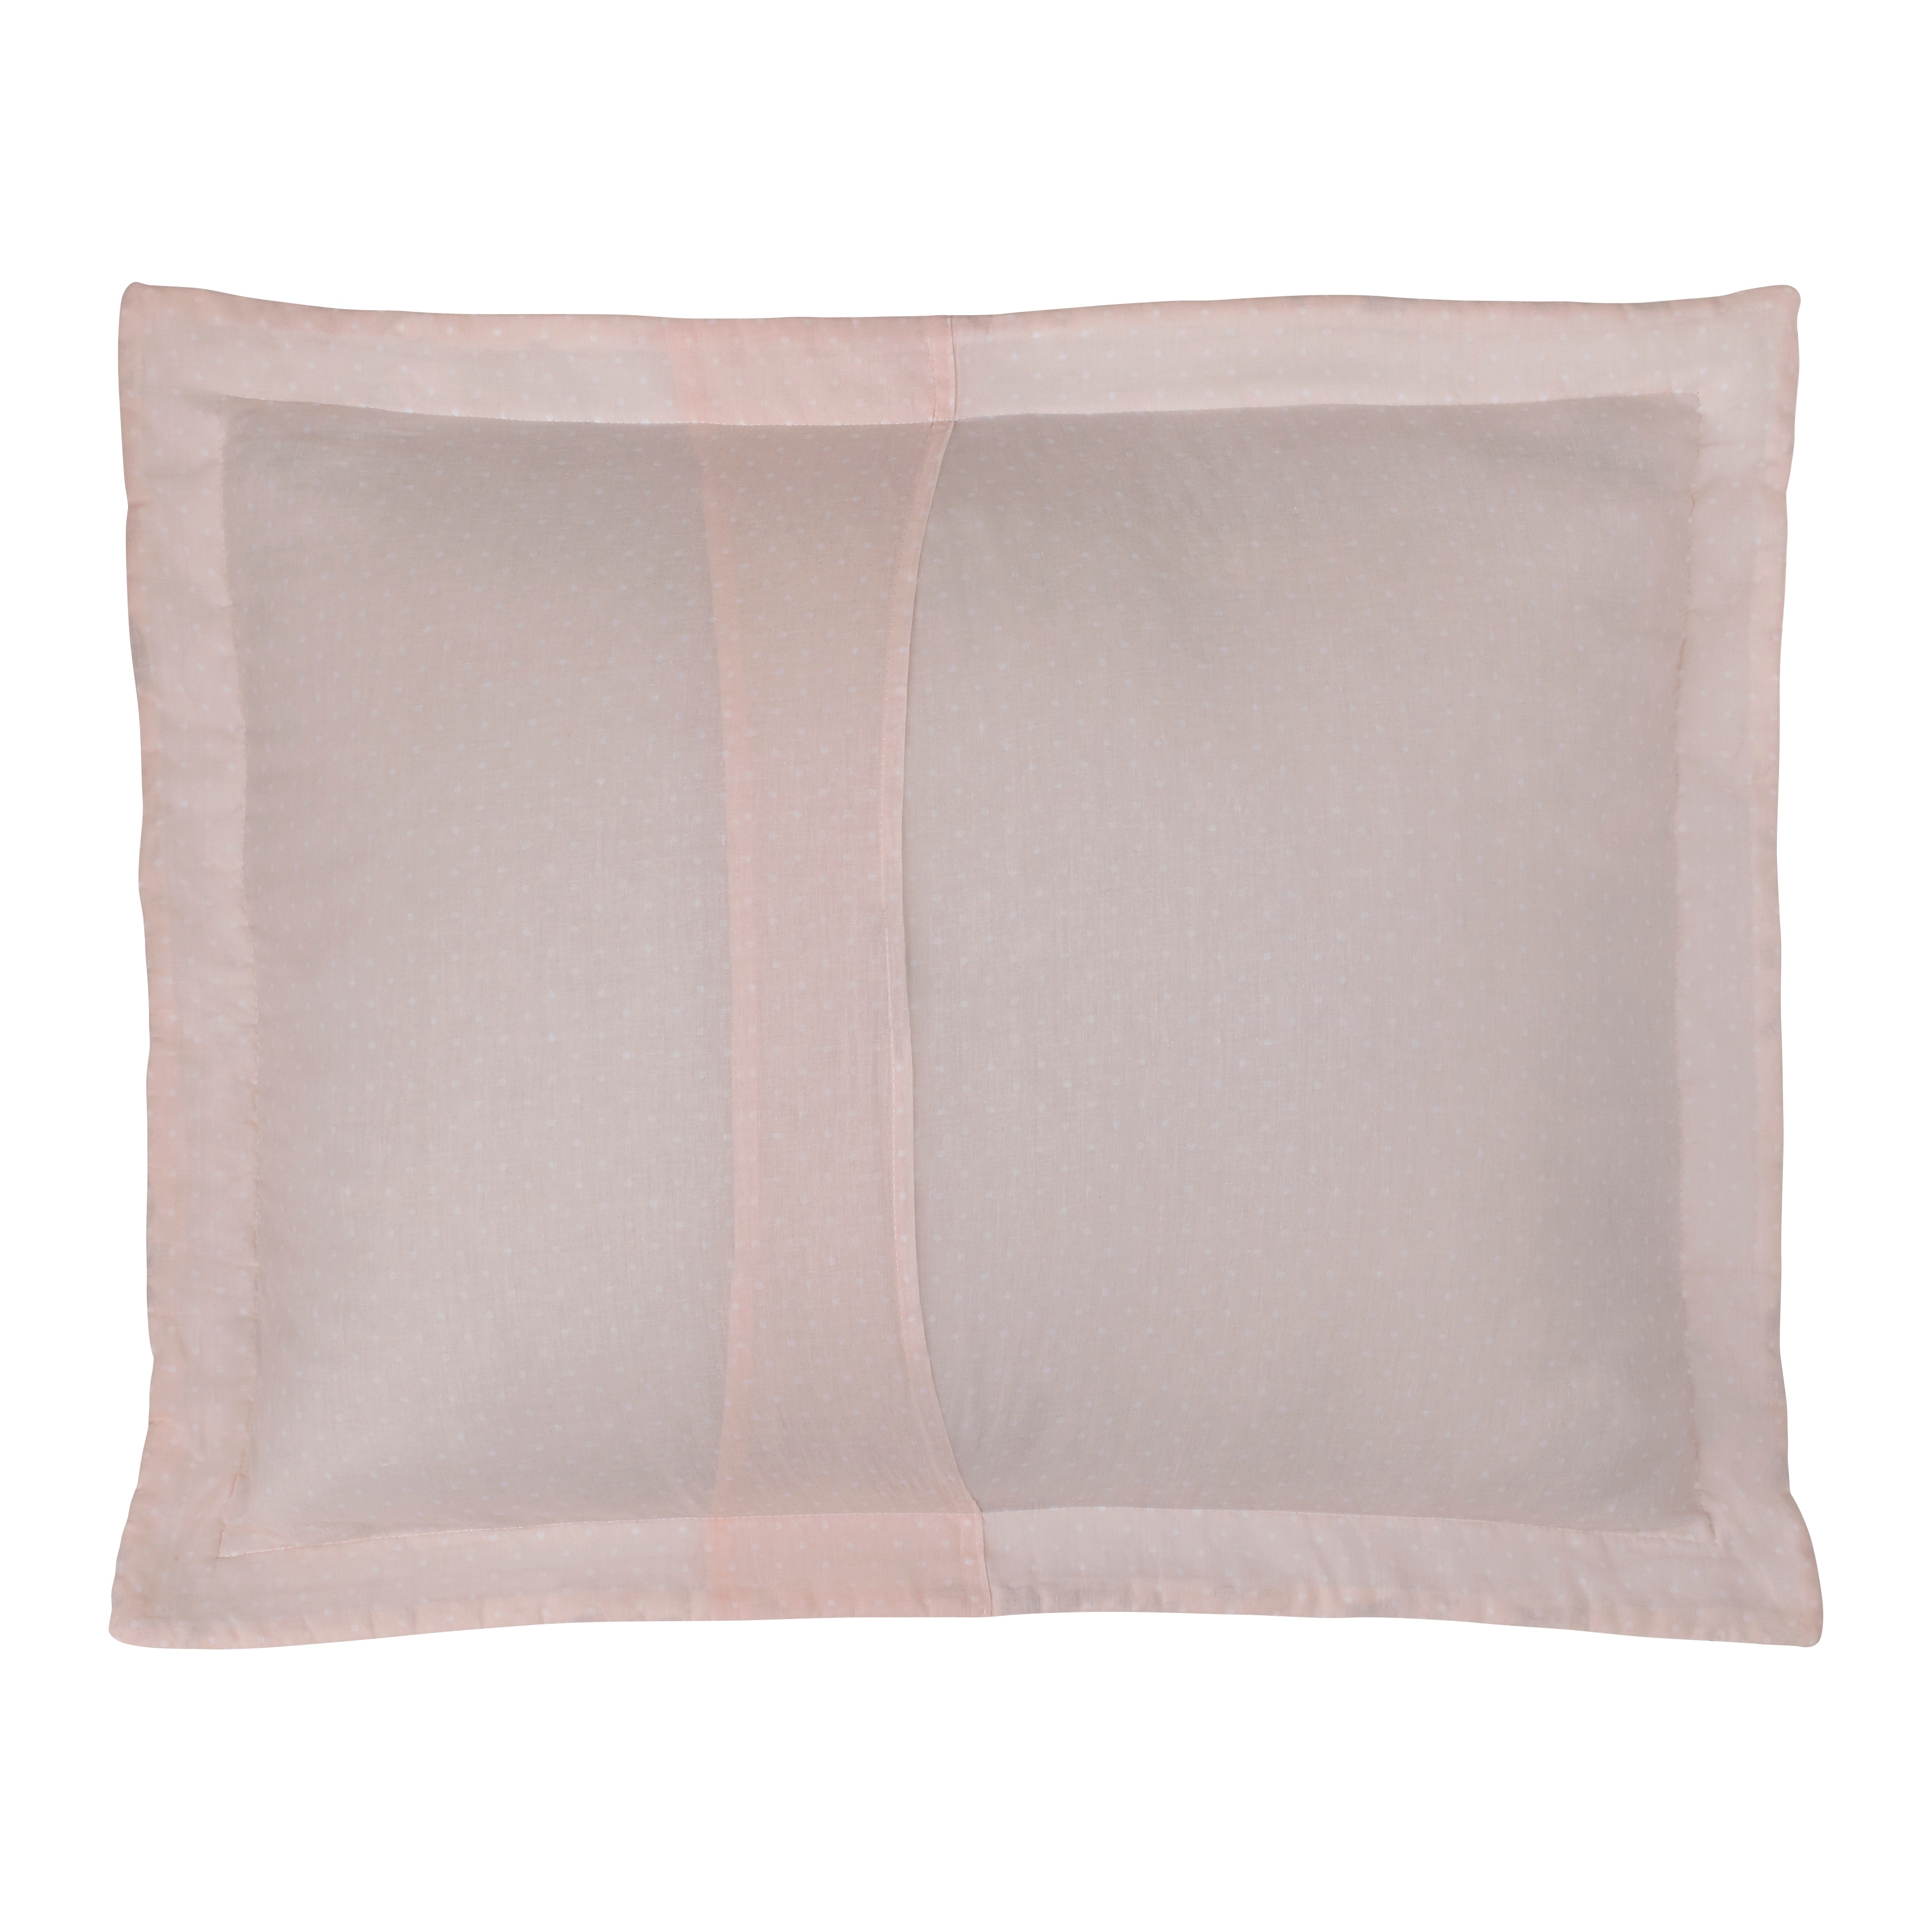 Laura Ashley Breezy Floral Cotton Reversible Pink/Grey Quilt Set